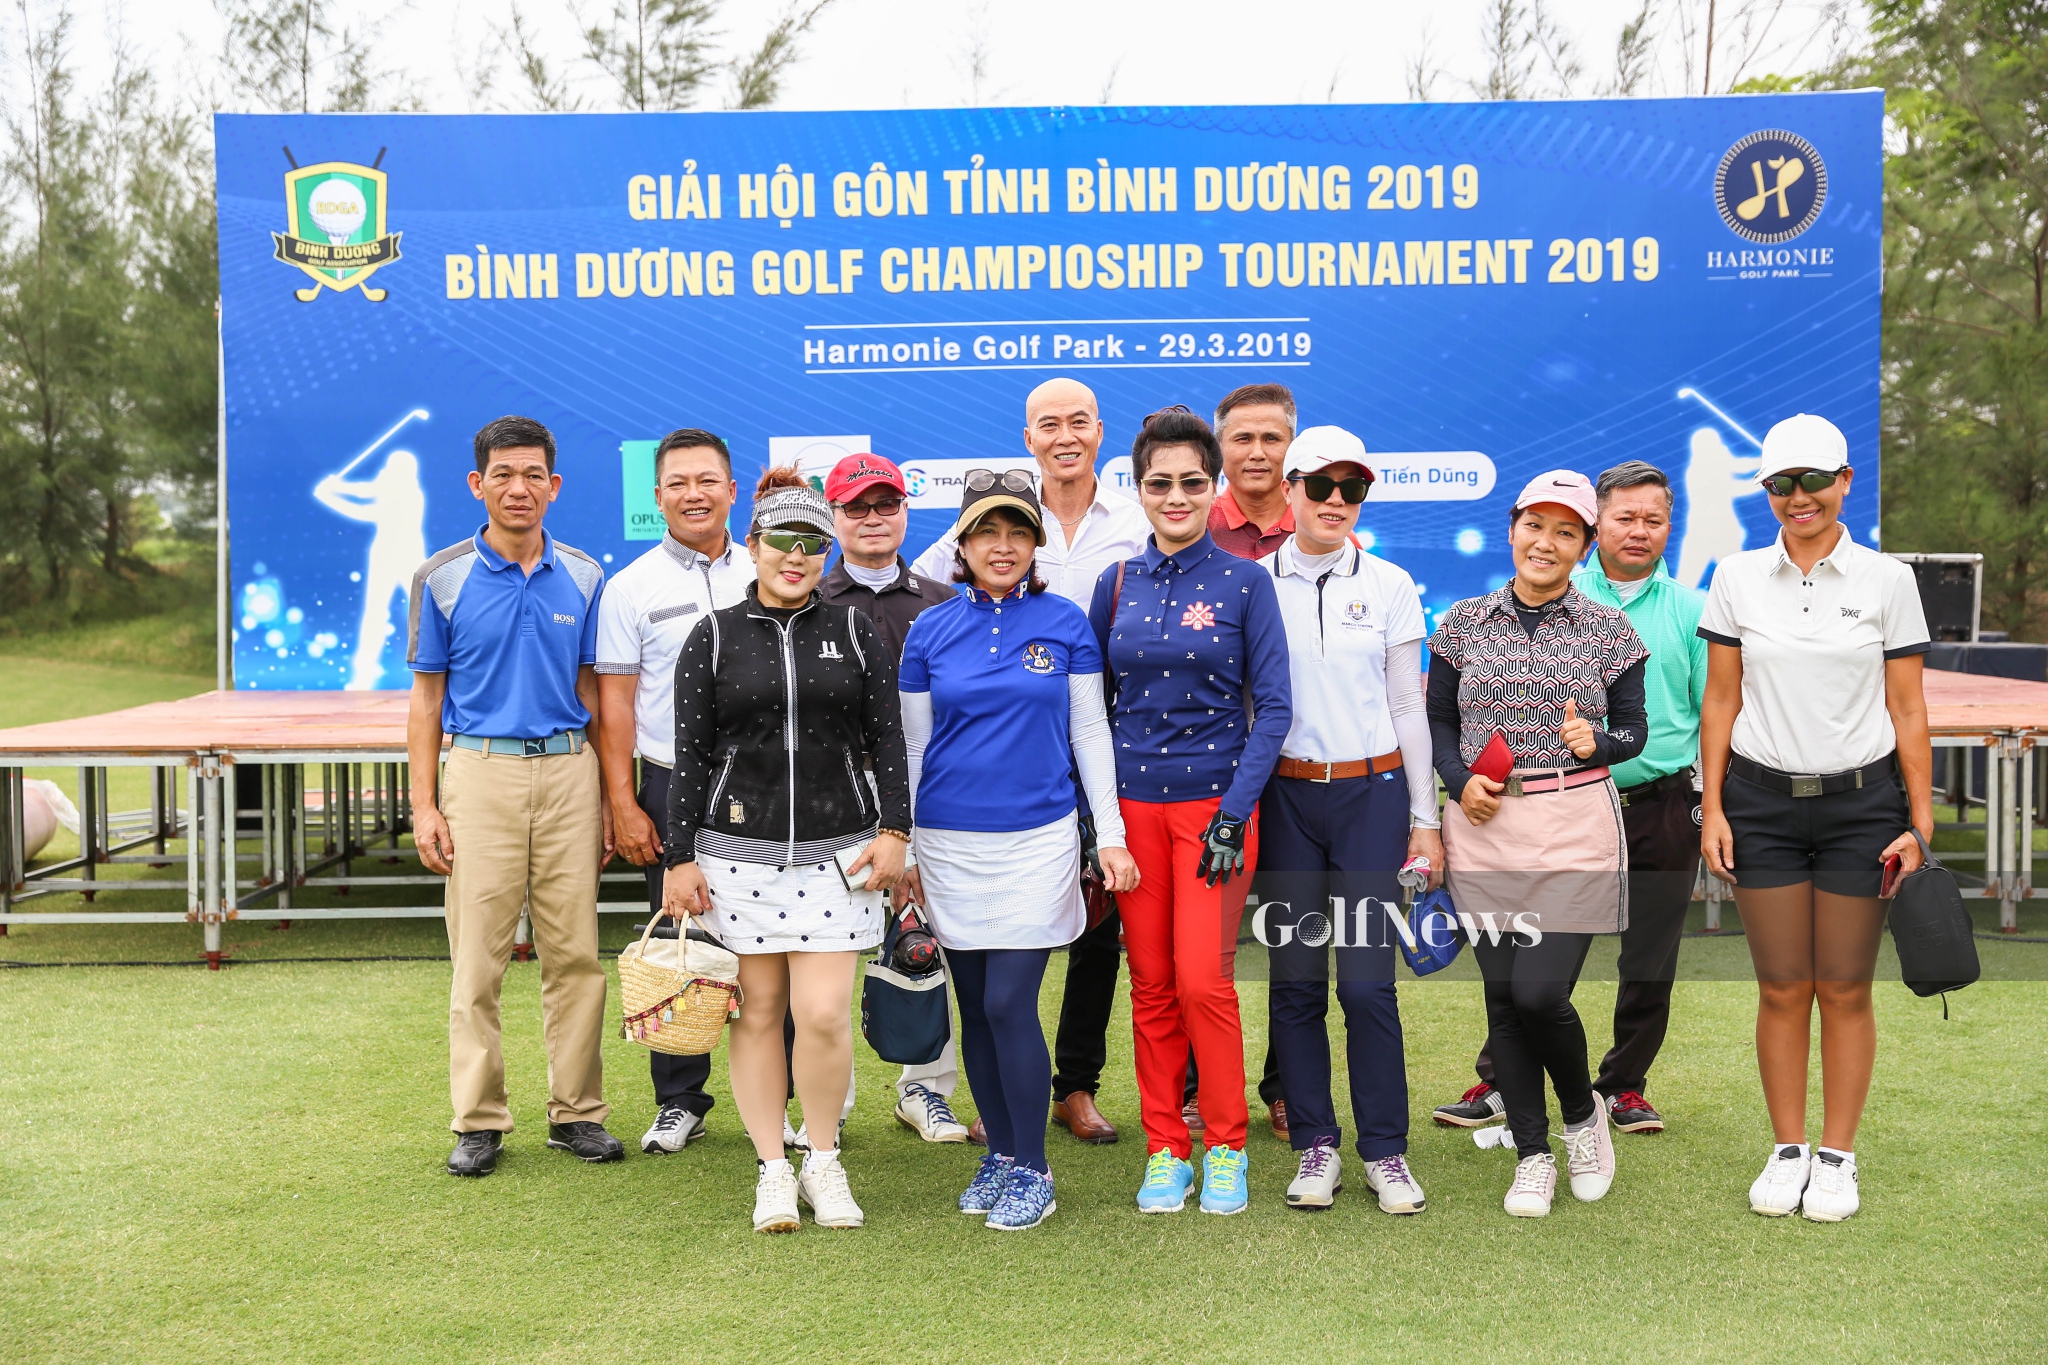 Golfer Lee Han Ho giành Best Gross 'Giải Hội golf Tỉnh Bình Dương - Lần 1 Năm 2019'